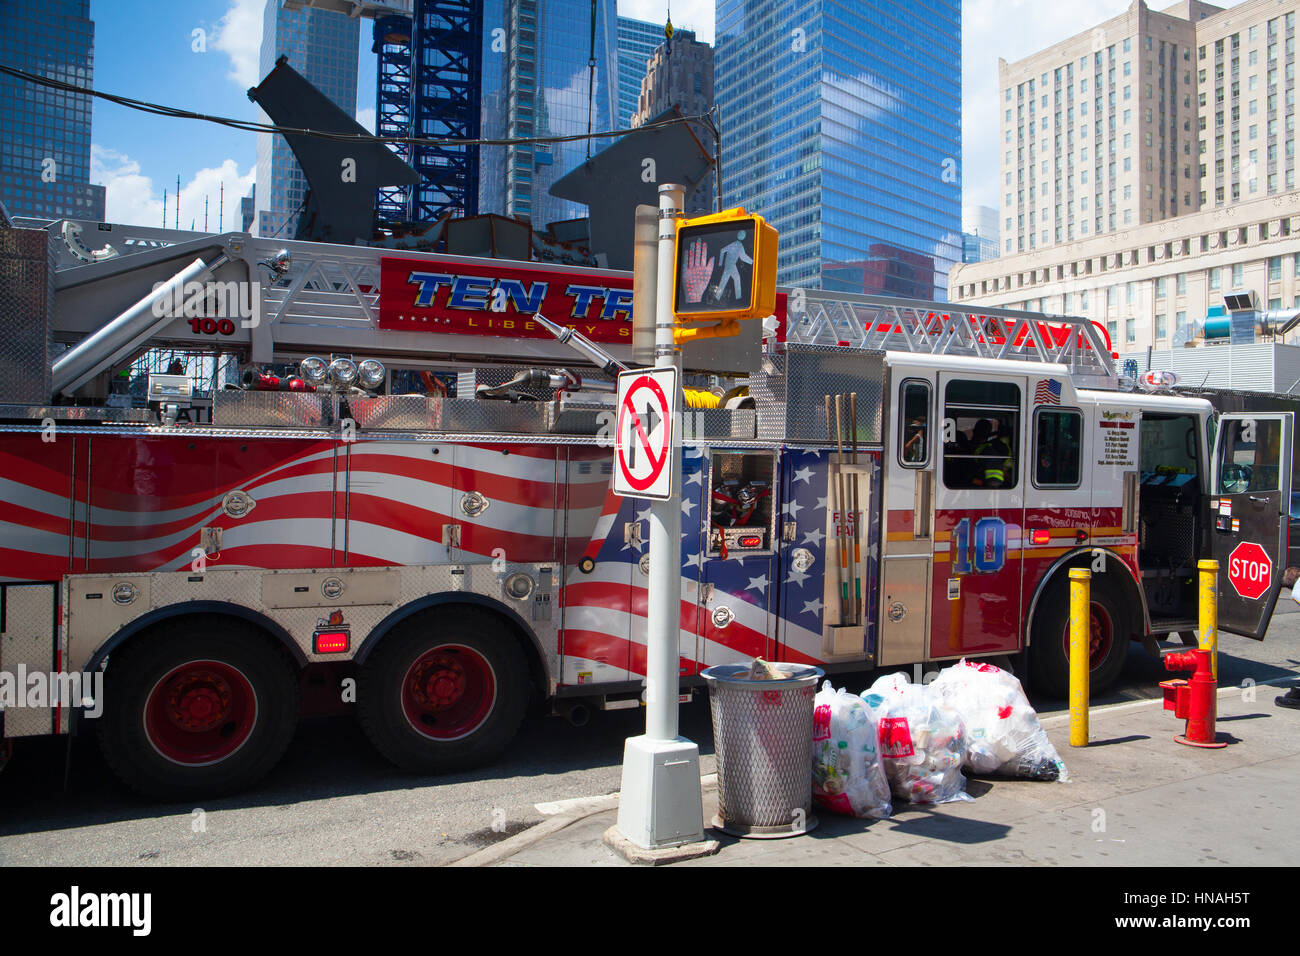 New York, USA - Le 29 juillet 2013:camion américain typique dans Manhattan, près du Ground Zero, New York City, USA Banque D'Images